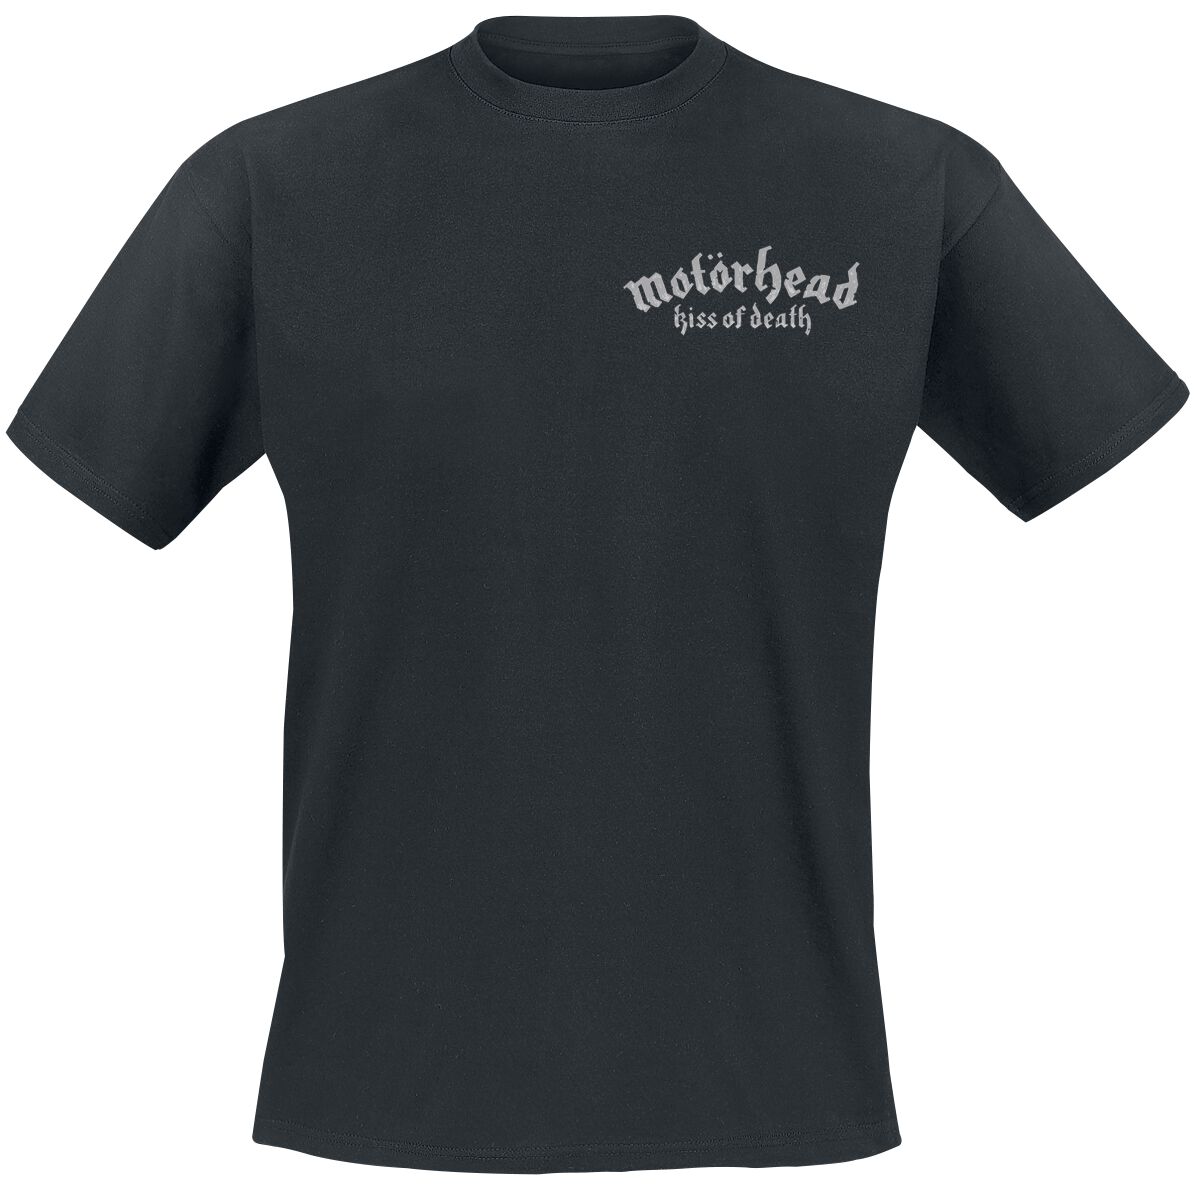 Motörhead T-Shirt - Kiss Of Death Bullet Circle V2 - S bis 4XL - für Männer - Größe 4XL - schwarz  - Lizenziertes Merchandise!